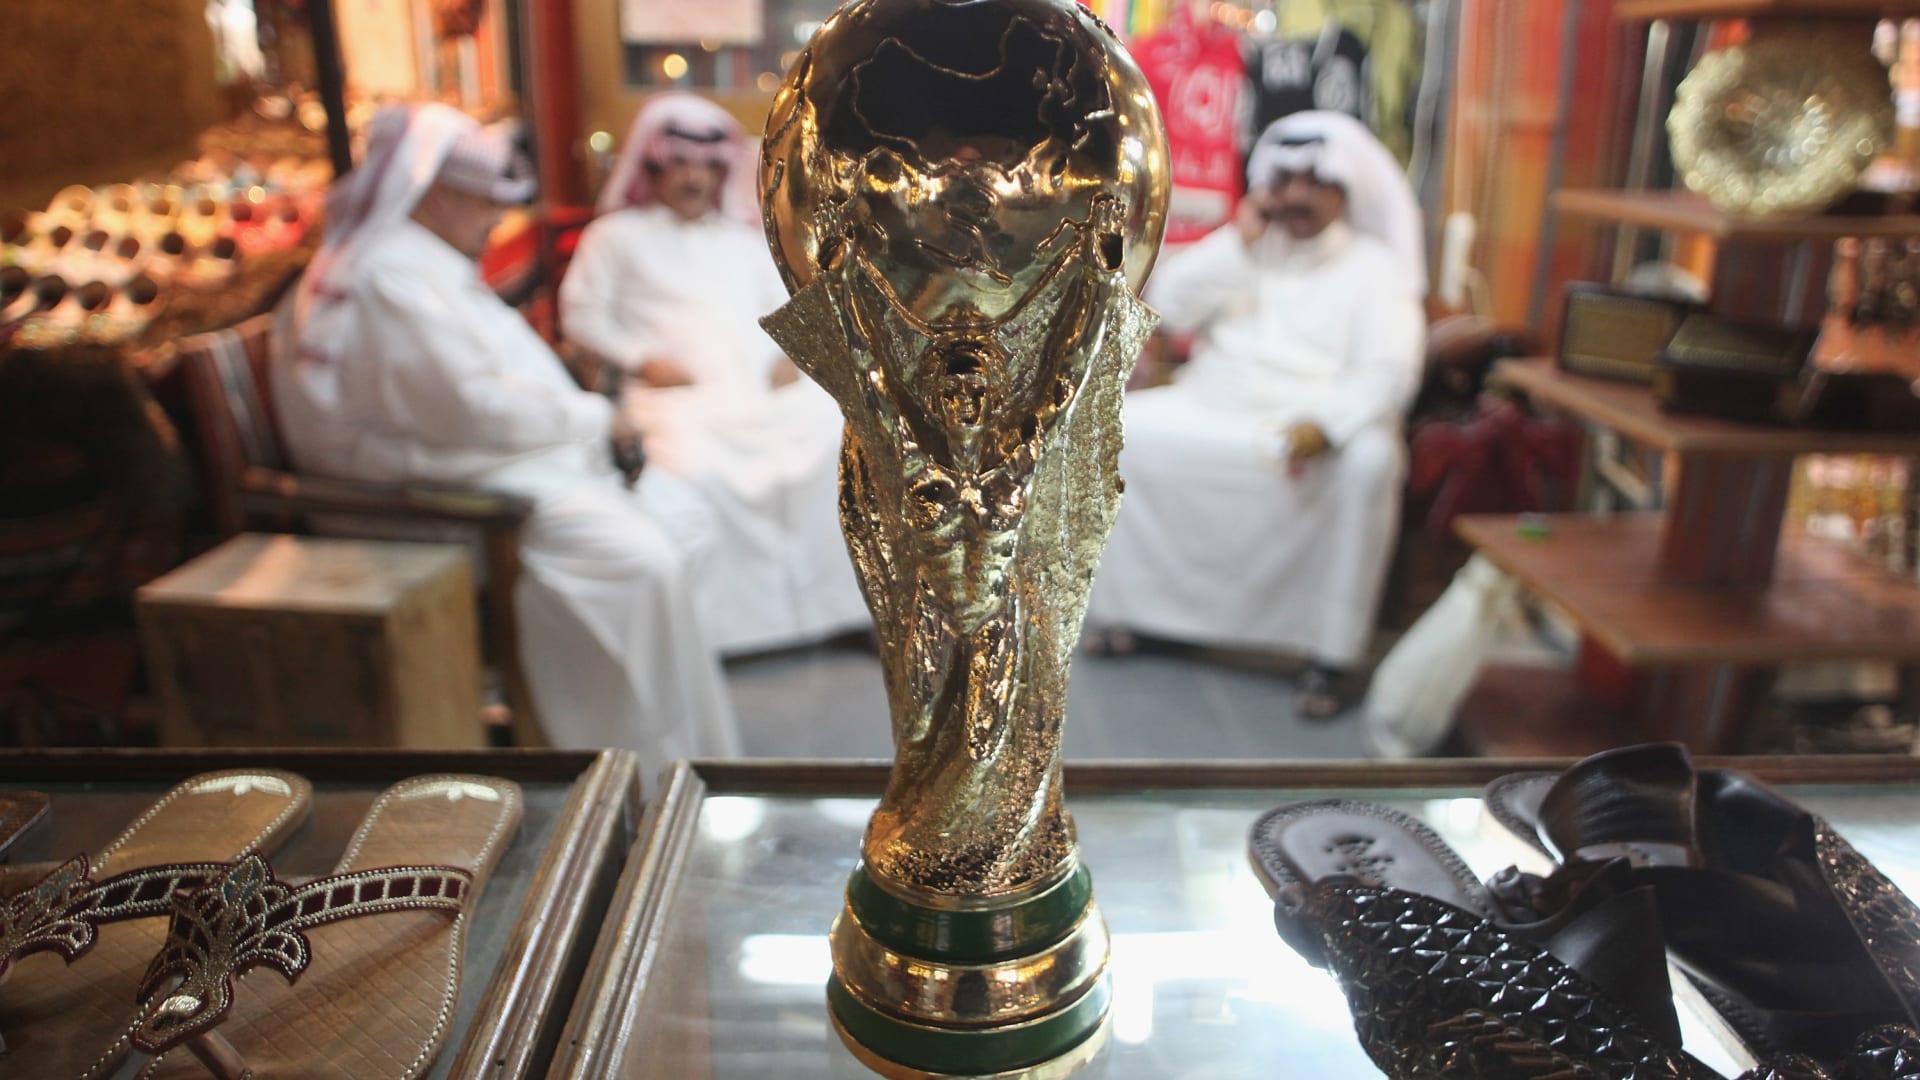 ناصر الخاطر لـCNN: تغطية مونديال قطر 2022 ظالمة